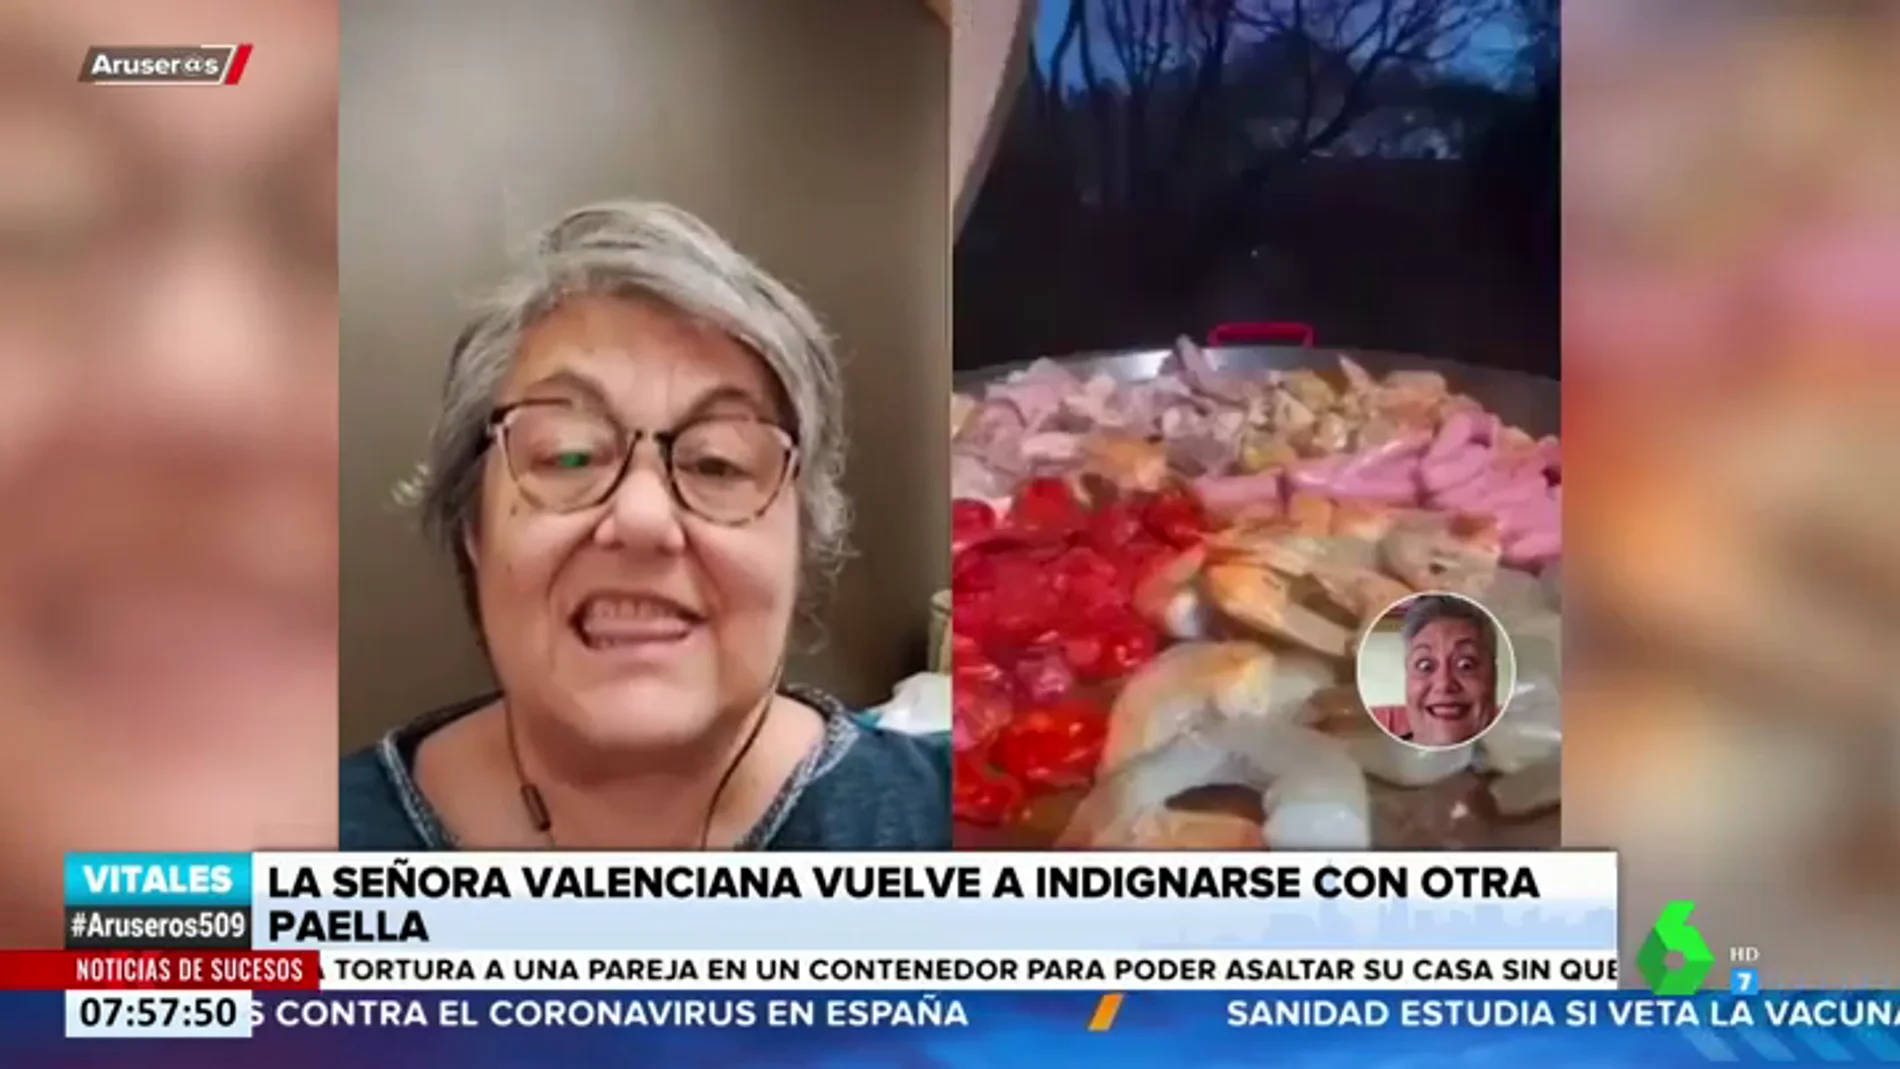 Vuelve la indignación de la valenciana que reacciona a recetas de paellas: "Voy a dejar de ver vídeos porque me 'energumeno'"